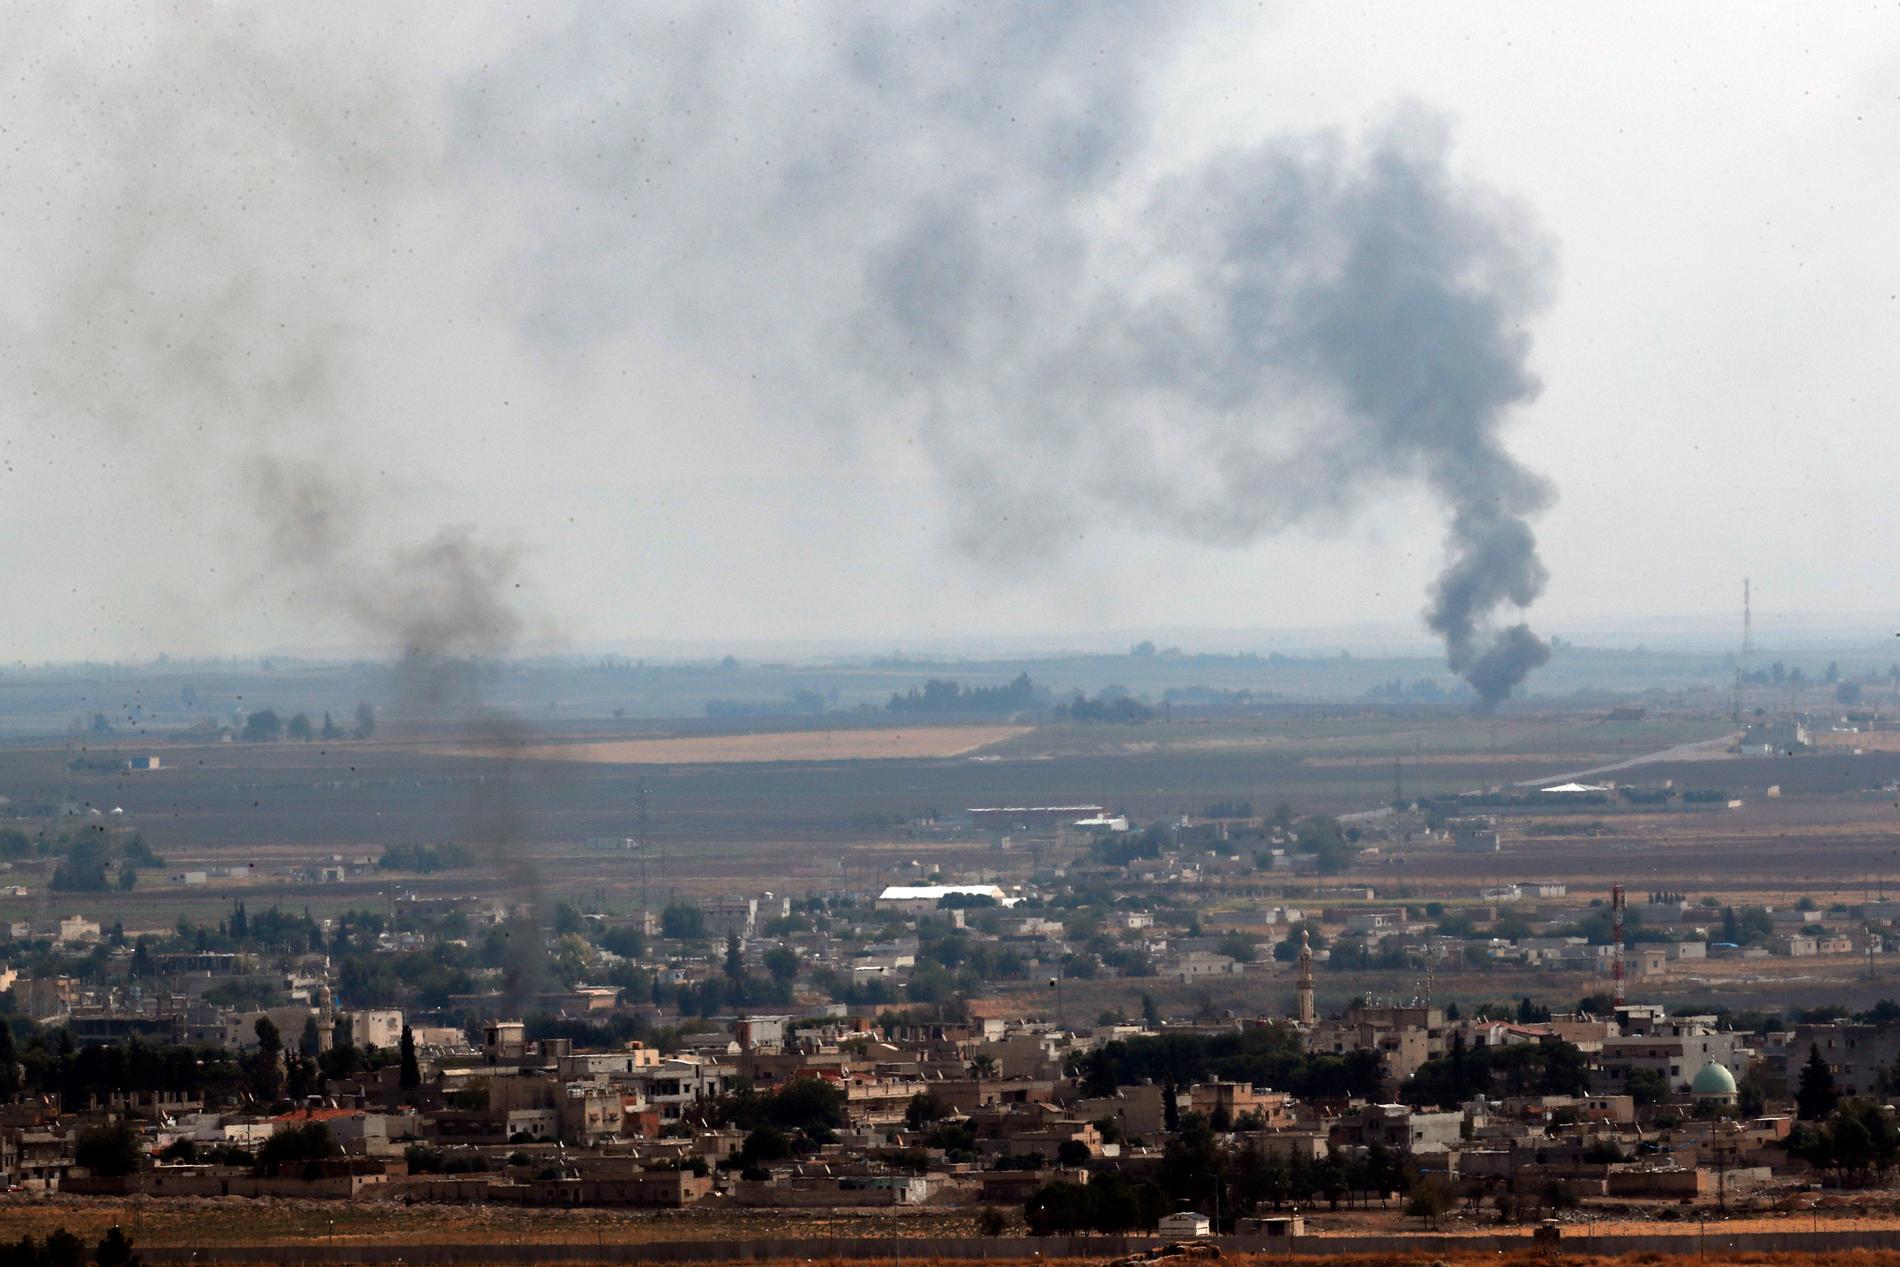 Trots avtalet om eldupphör fortsatte röken att stiga från attackerade mål i nordöstra Syrien på söndagen.